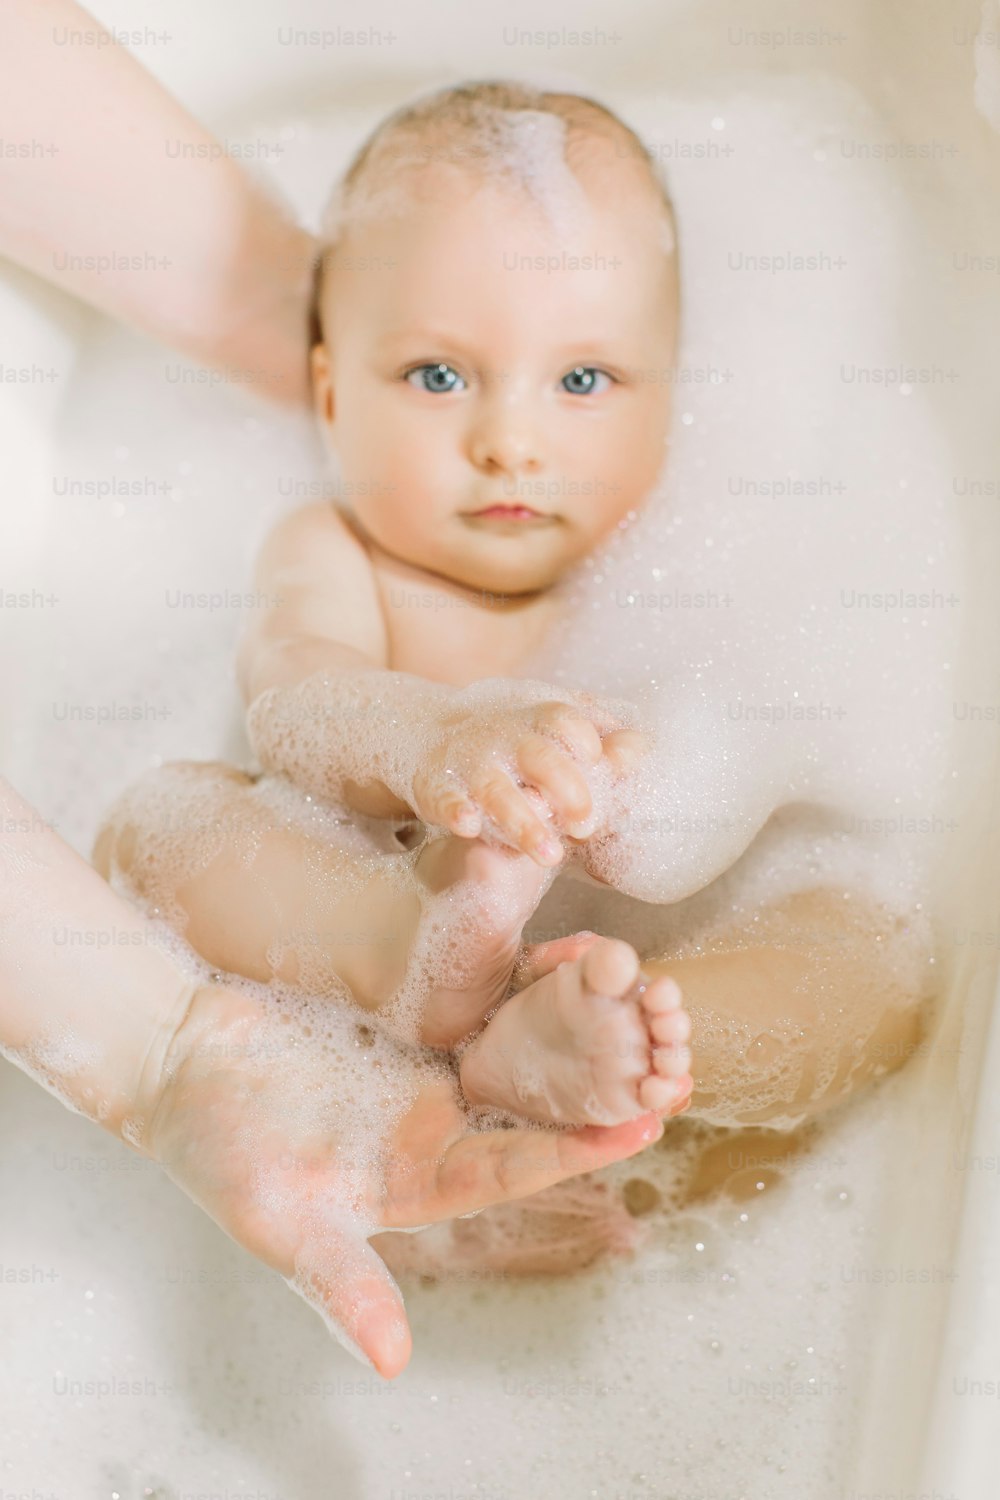 거품 거품을 가지고 노는 목욕을 하는 행복한 웃는 아기. 욕조에 있는 어린 아이. 유아 씻기 및 목욕. 어린 아이들을위한 위생 및 보살핌. 신생아 목욕